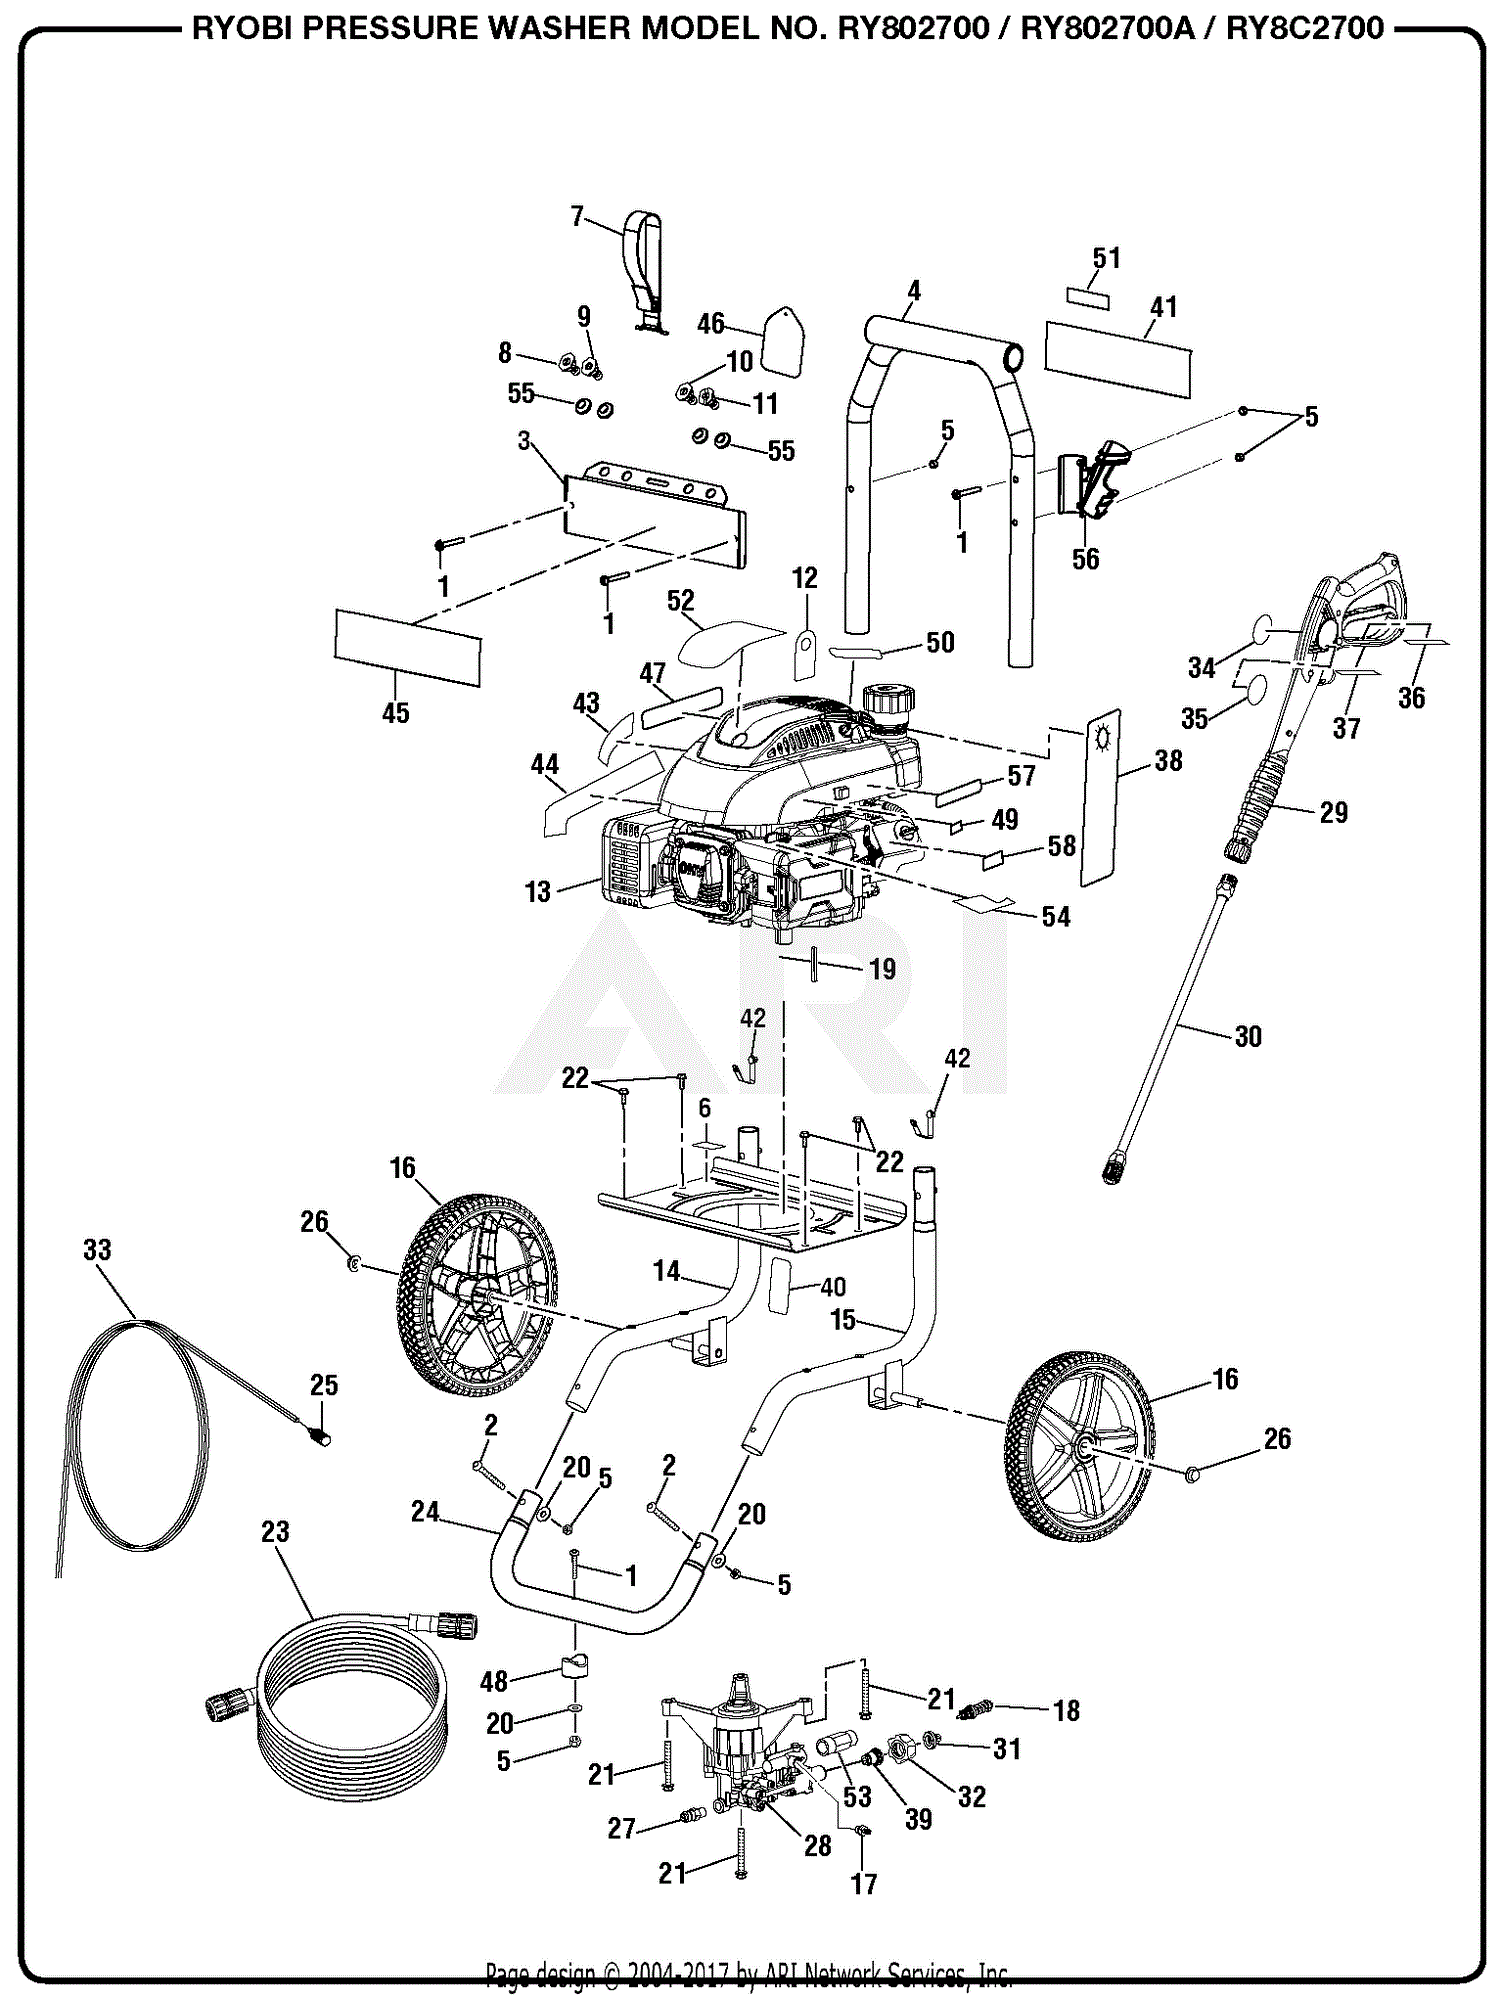 Ryobi Pressure Washer Parts Diagram - Heat exchanger spare parts